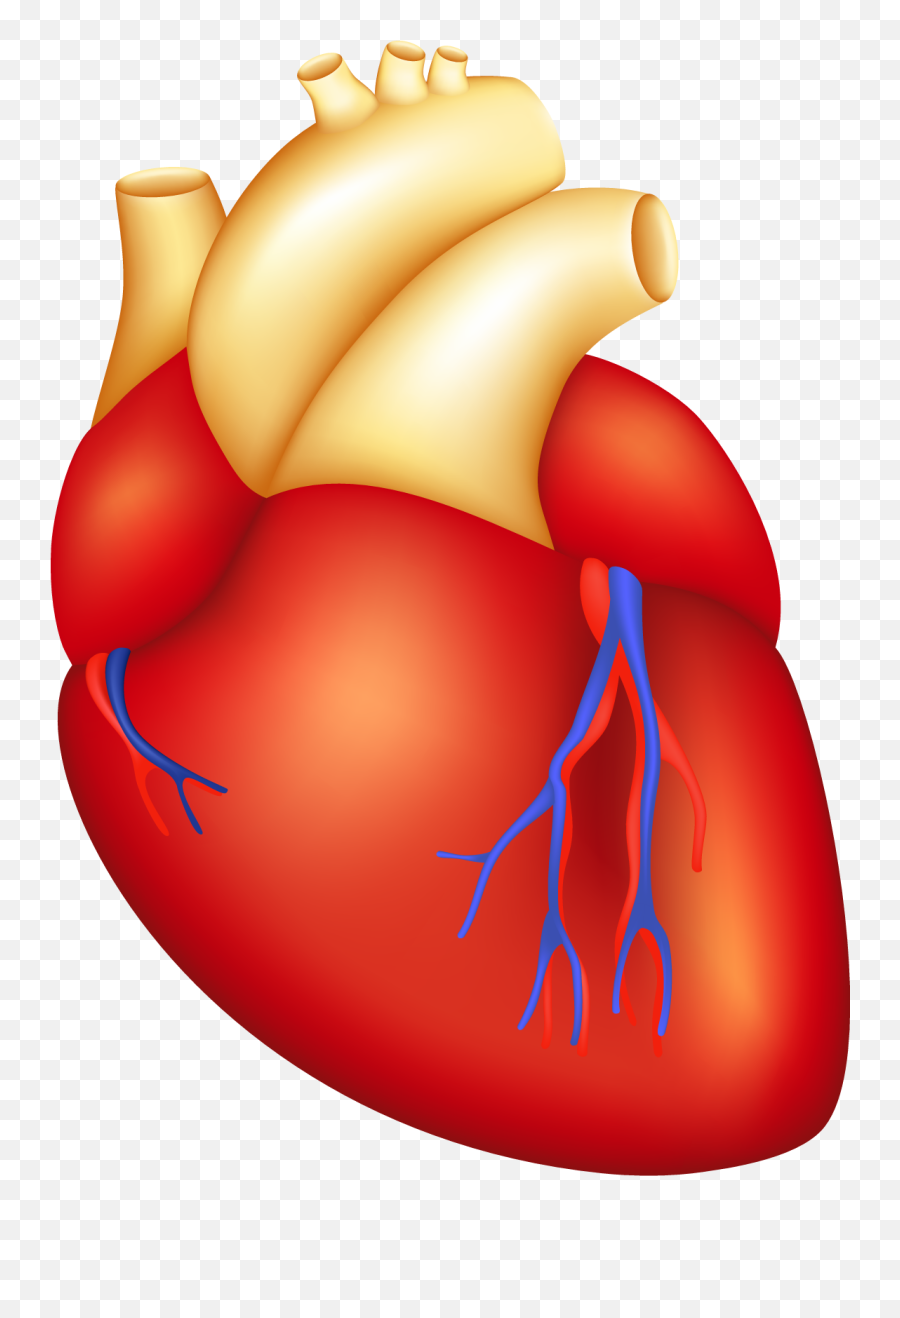 Cartoon Human Heart - Clip Art Heart Surgery Emoji,Human Heart Clipart